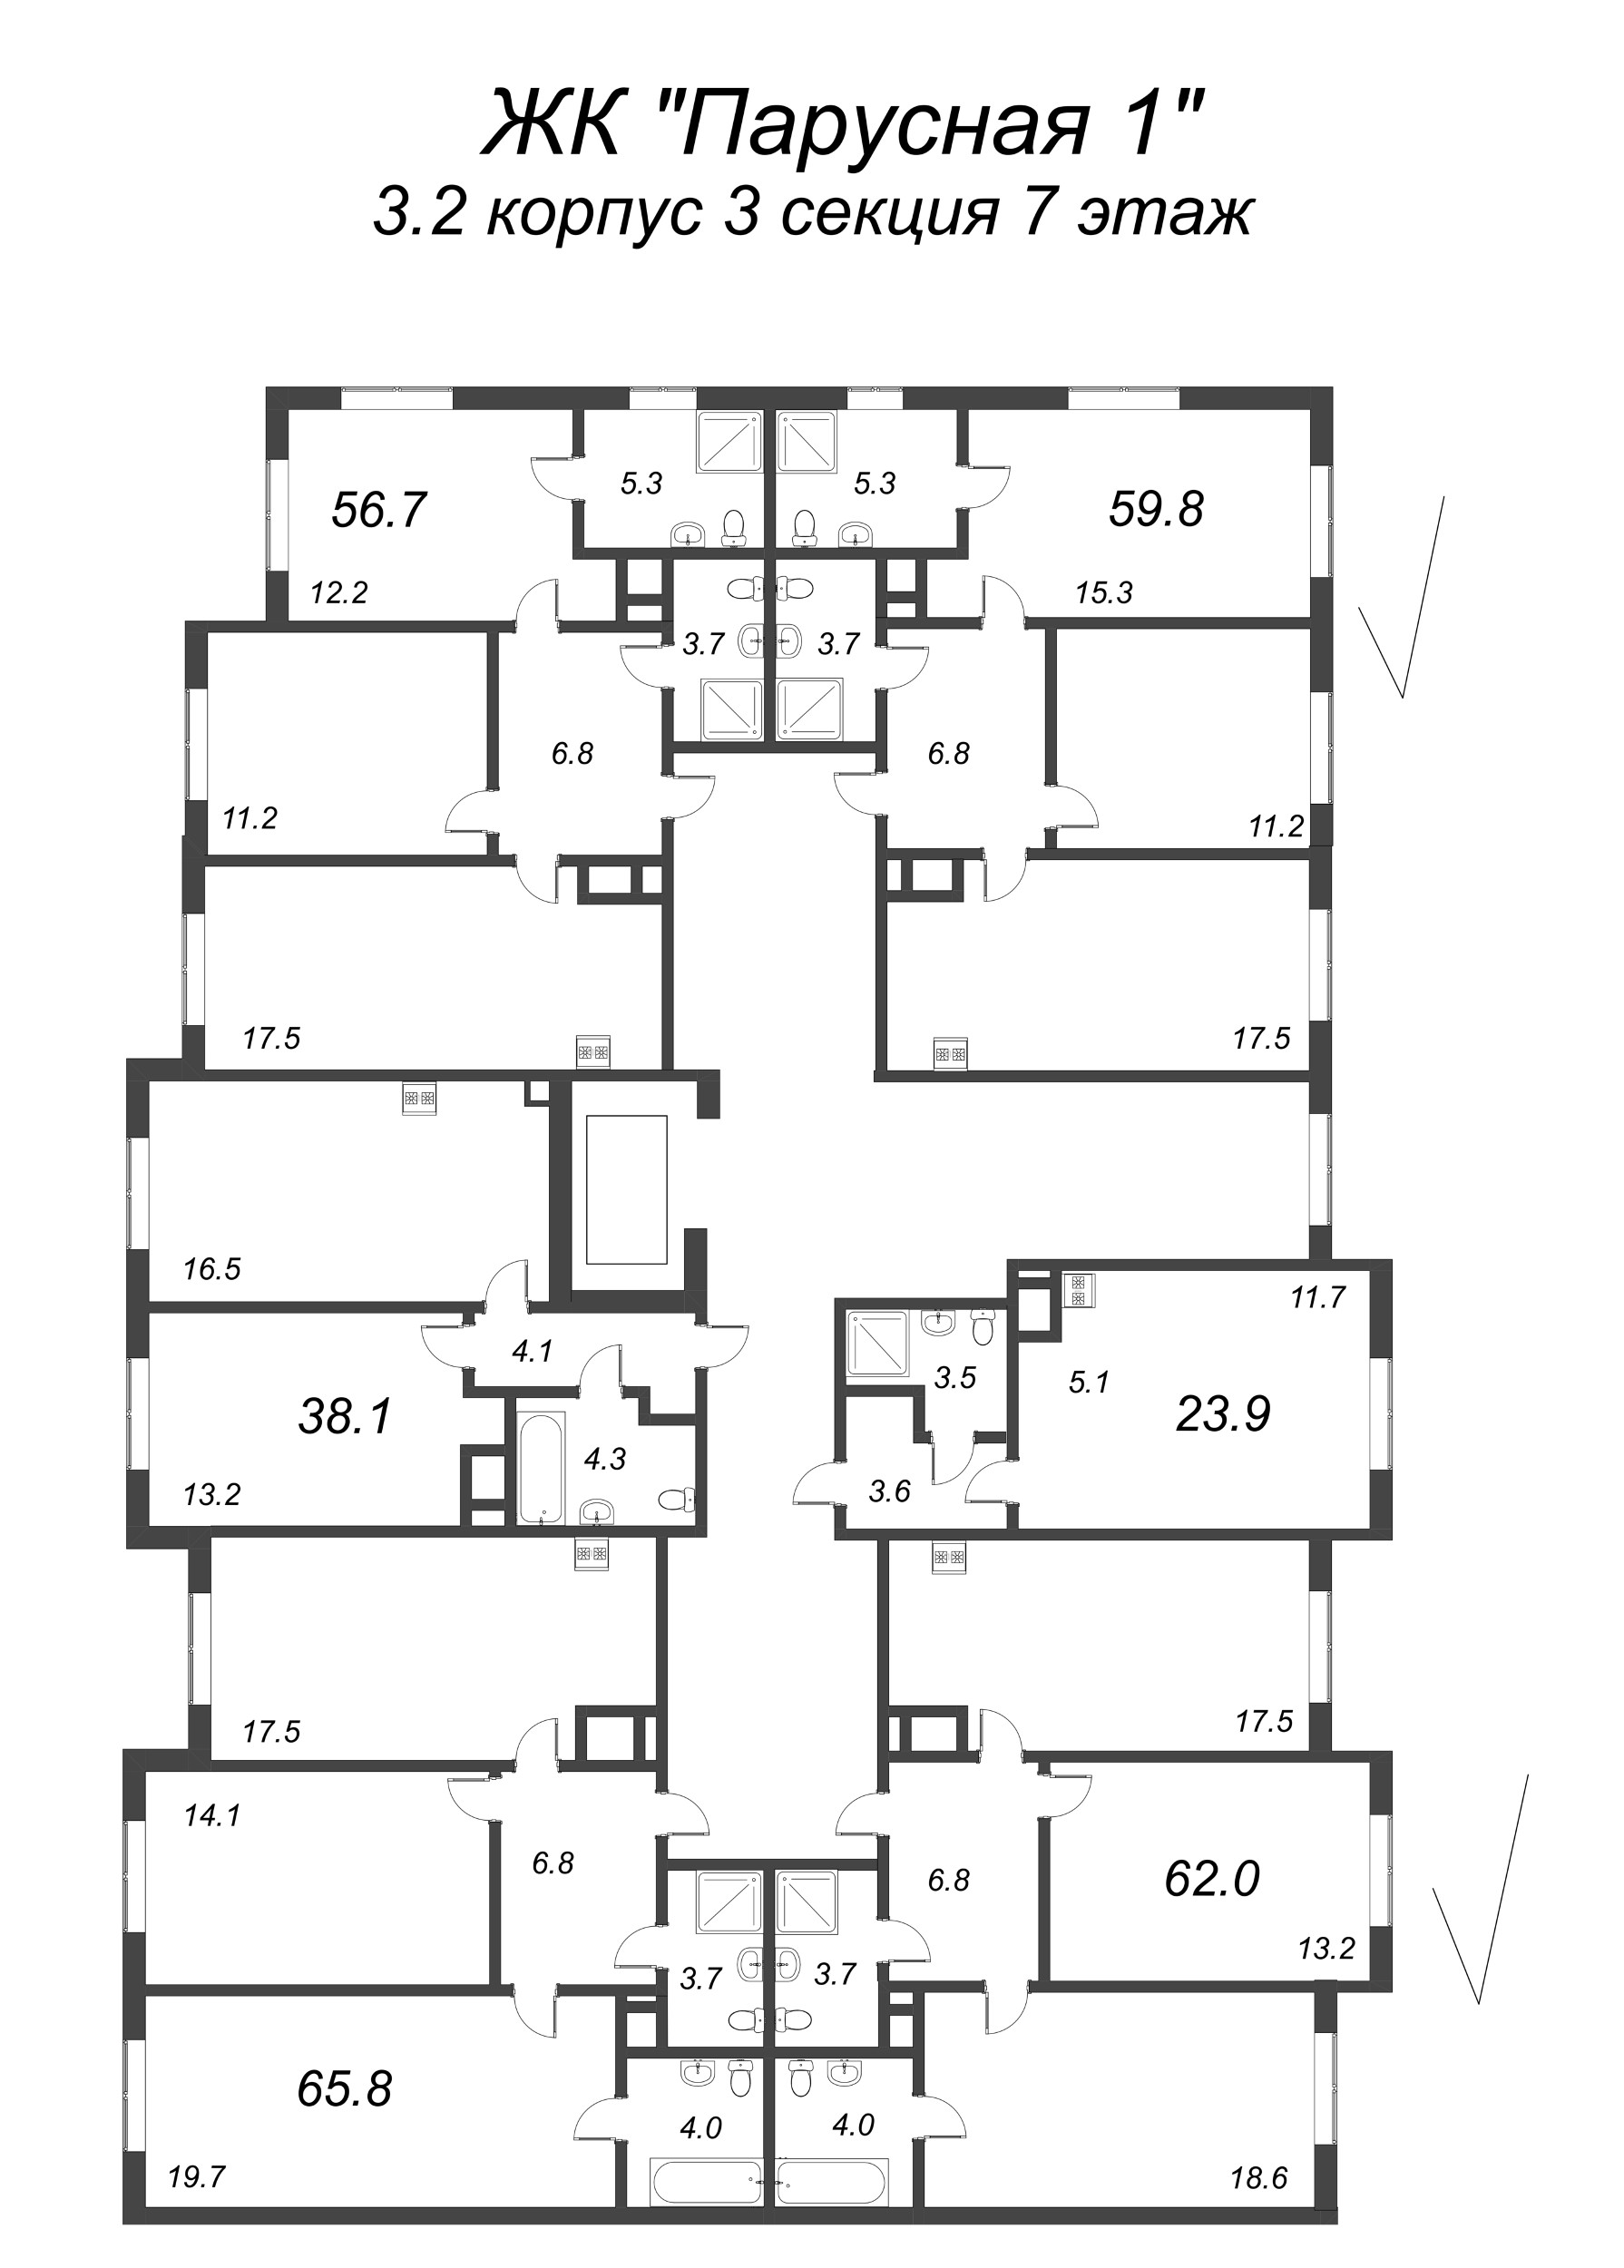 Квартира-студия, 23.9 м² в ЖК "Парусная 1" - планировка этажа